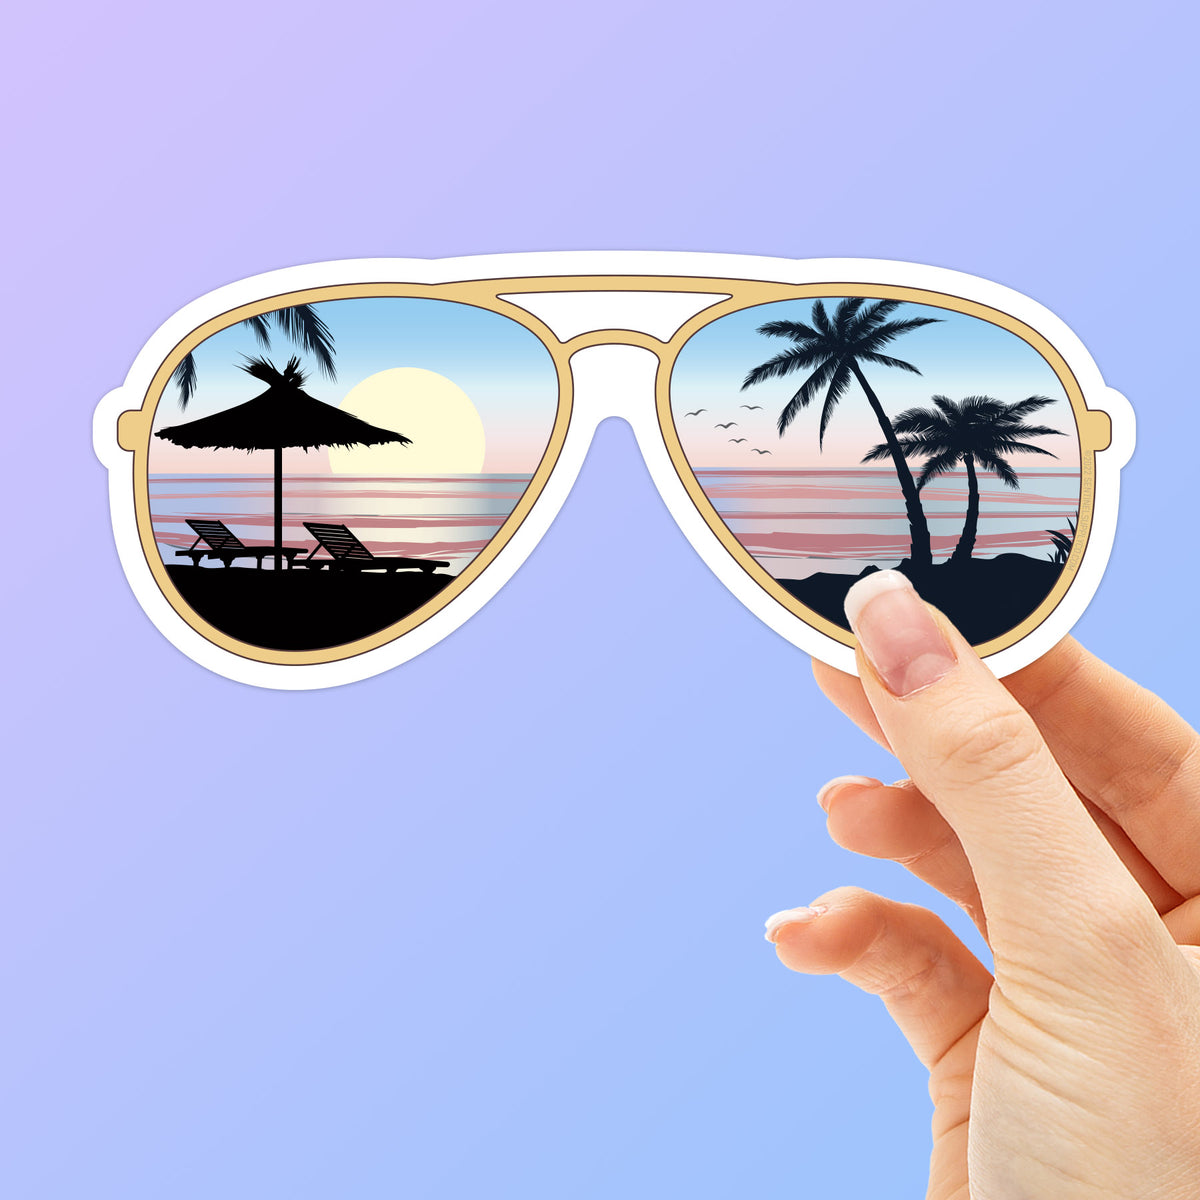 Sunglasses Beach Sticker - Ocean Shore Sunset Decal